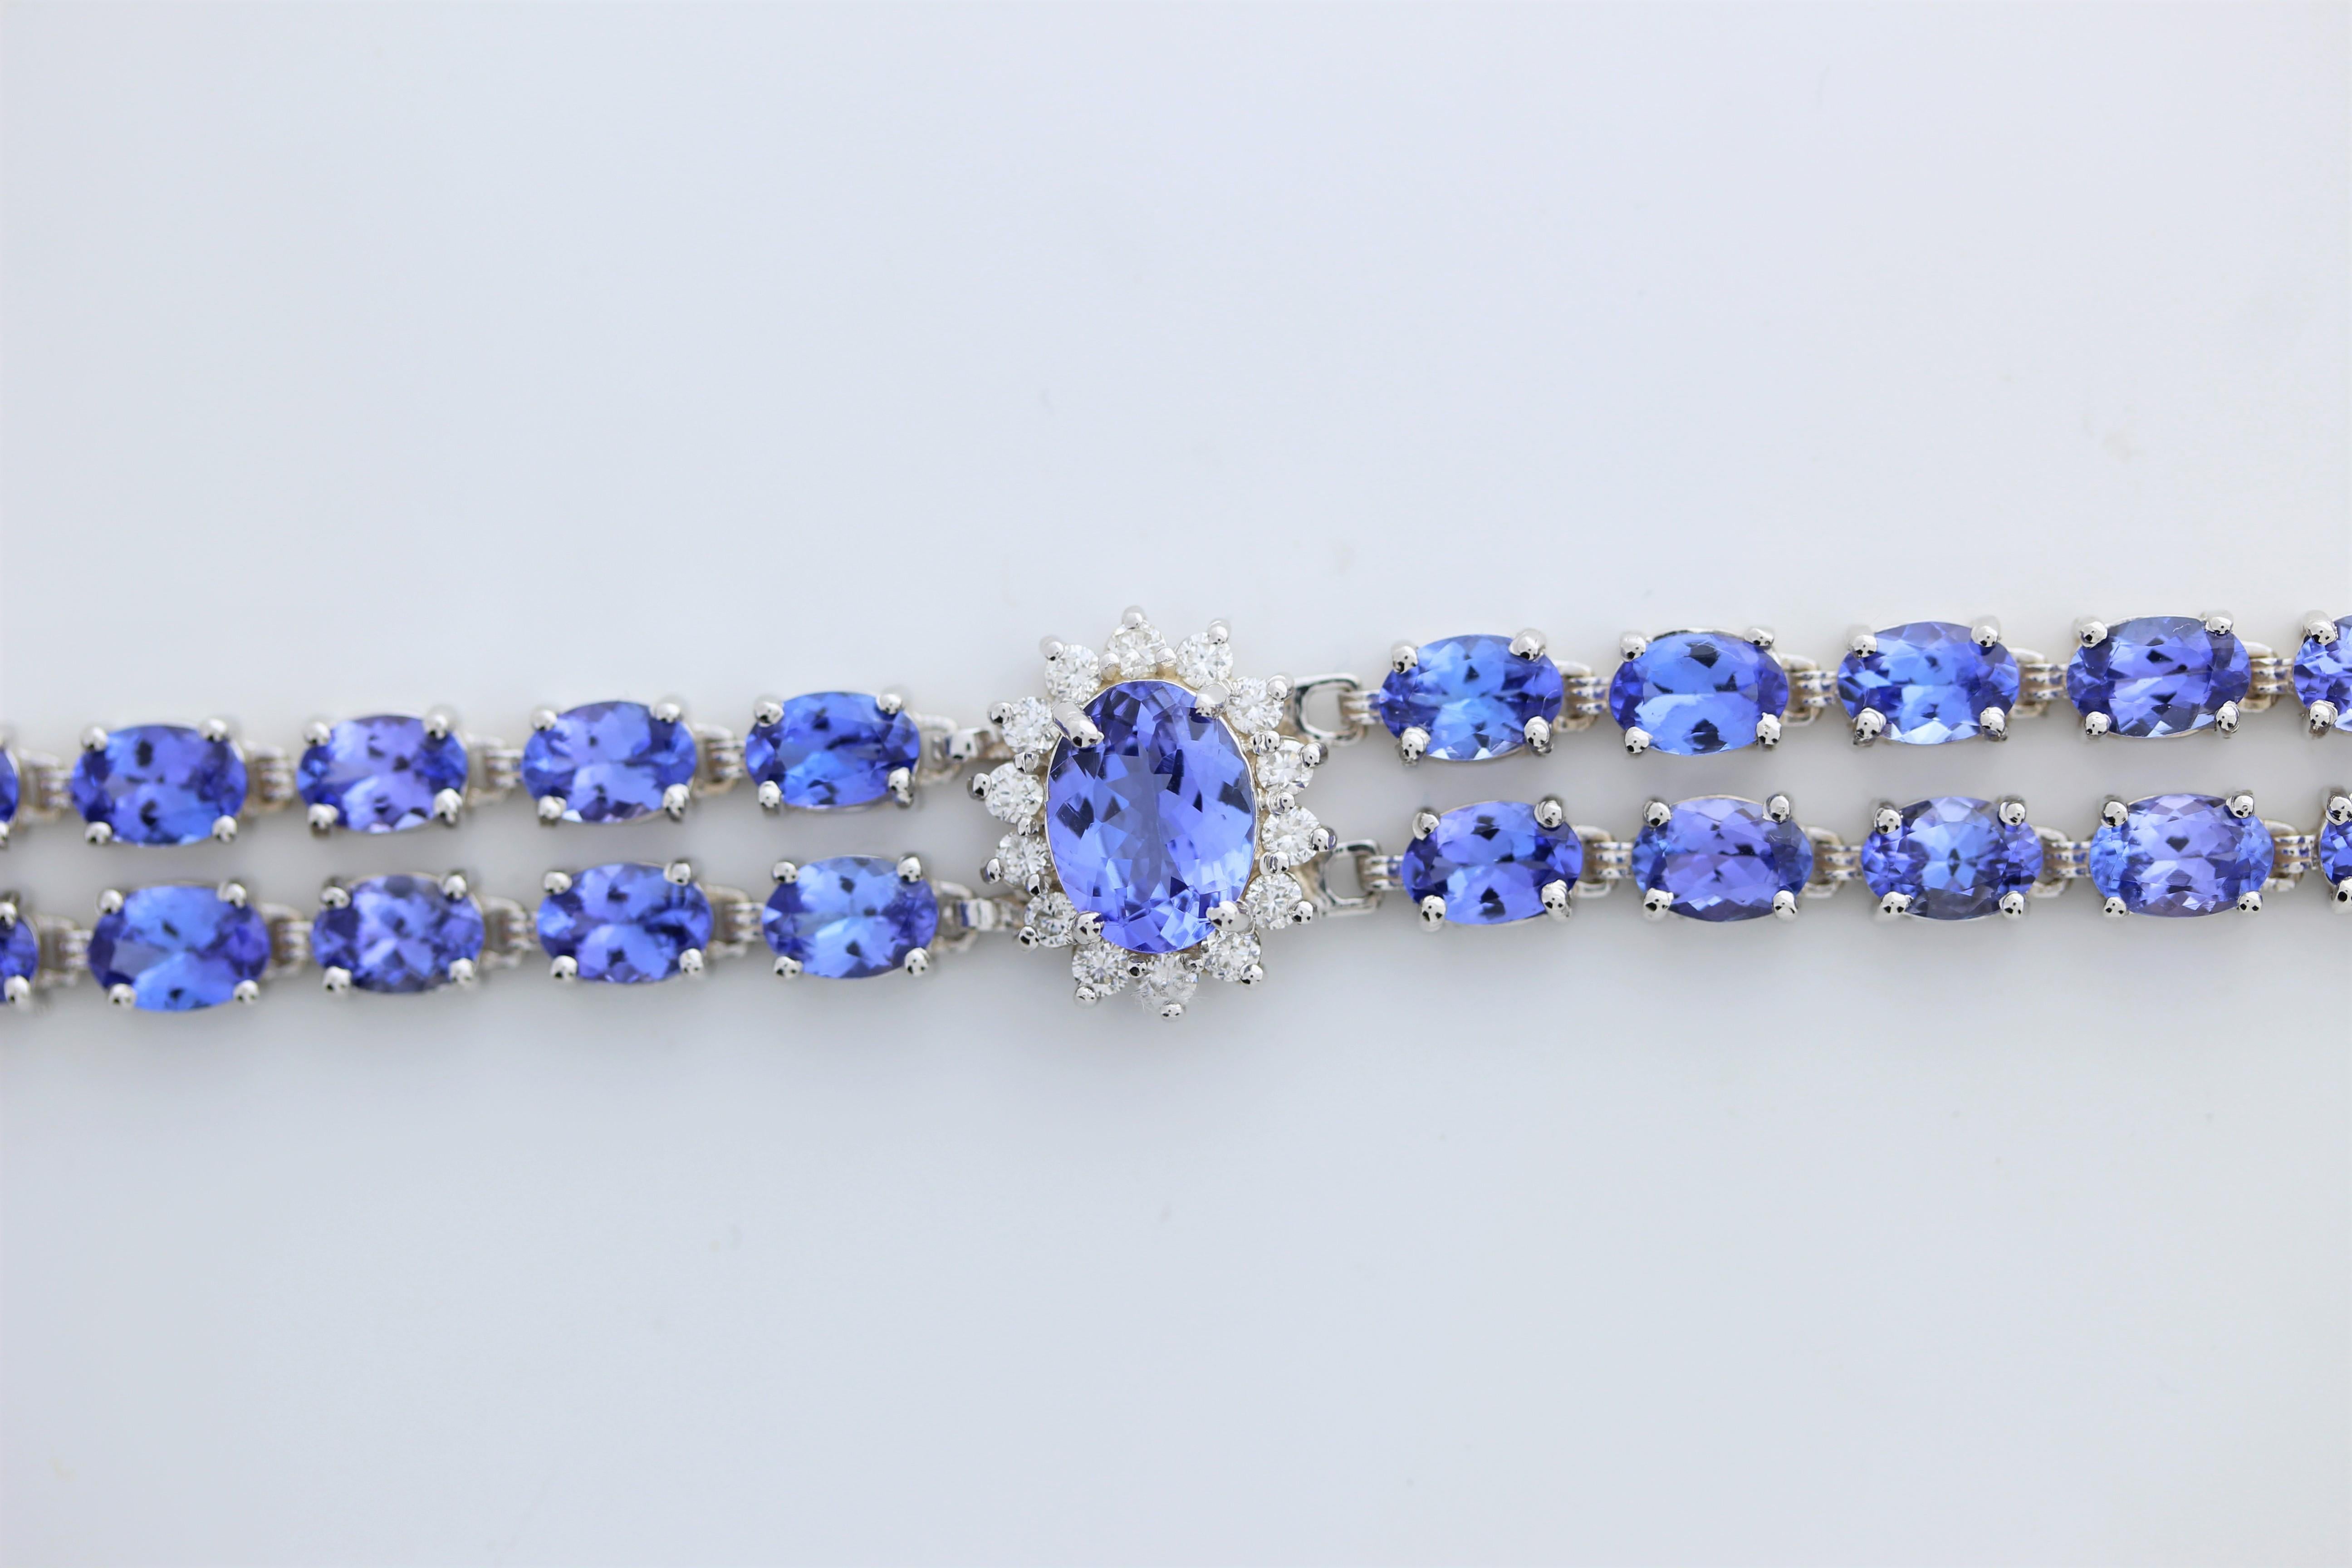 Le bracelet mode présente des pierres précieuses en tanzanite d'un poids total de 24 carats, serties dans de l'or blanc 18 carats. Le bracelet est rehaussé de 42 diamants ronds d'un poids total de 1,5 carat. La combinaison de la couleur bleu-violet